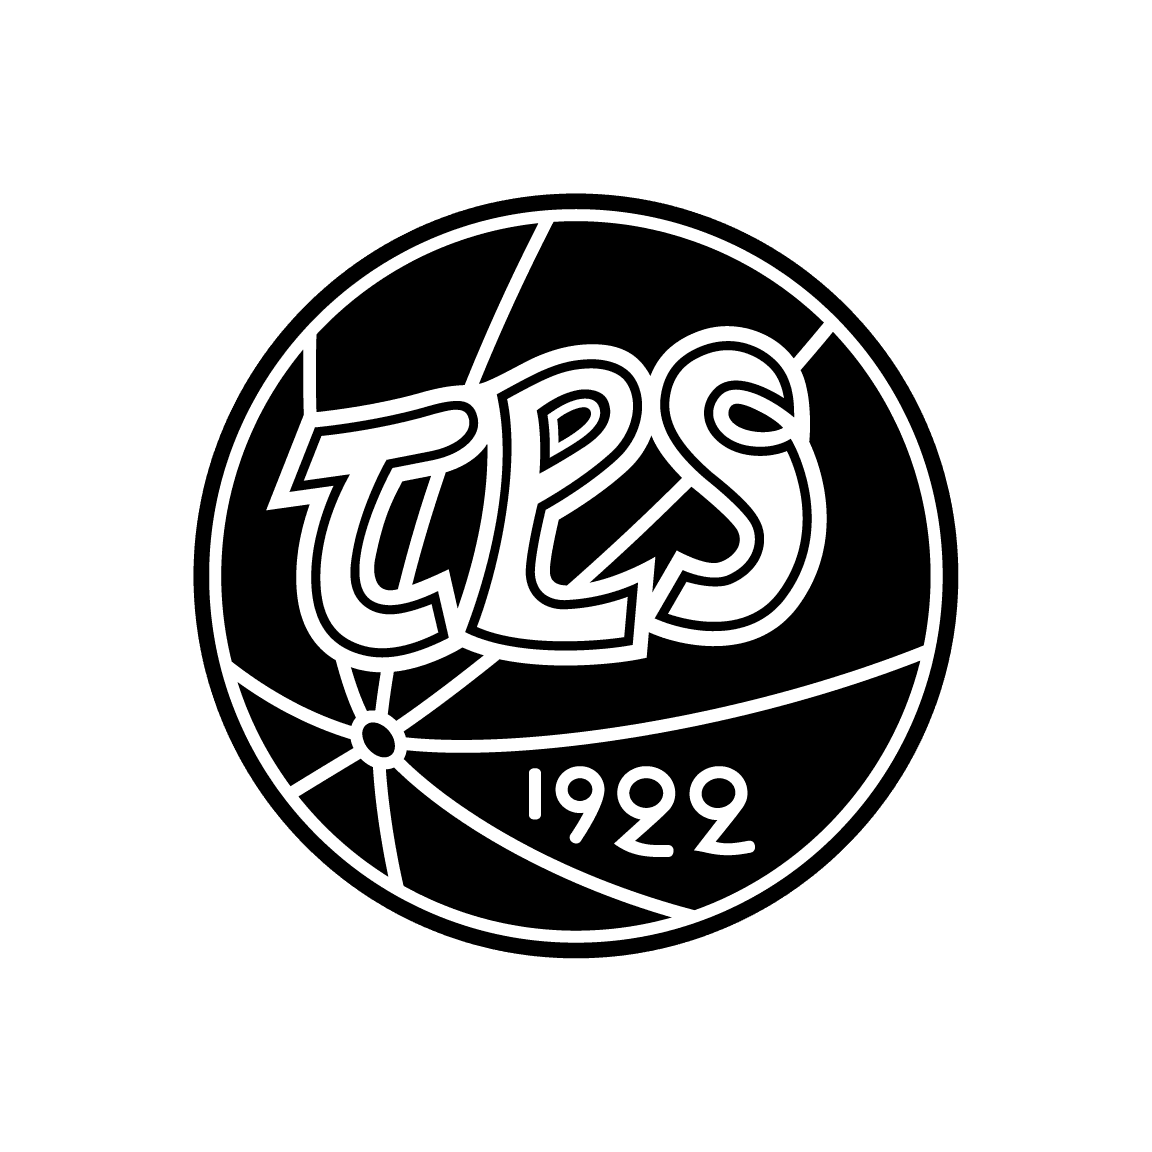 TPS Salibandy seuran logo